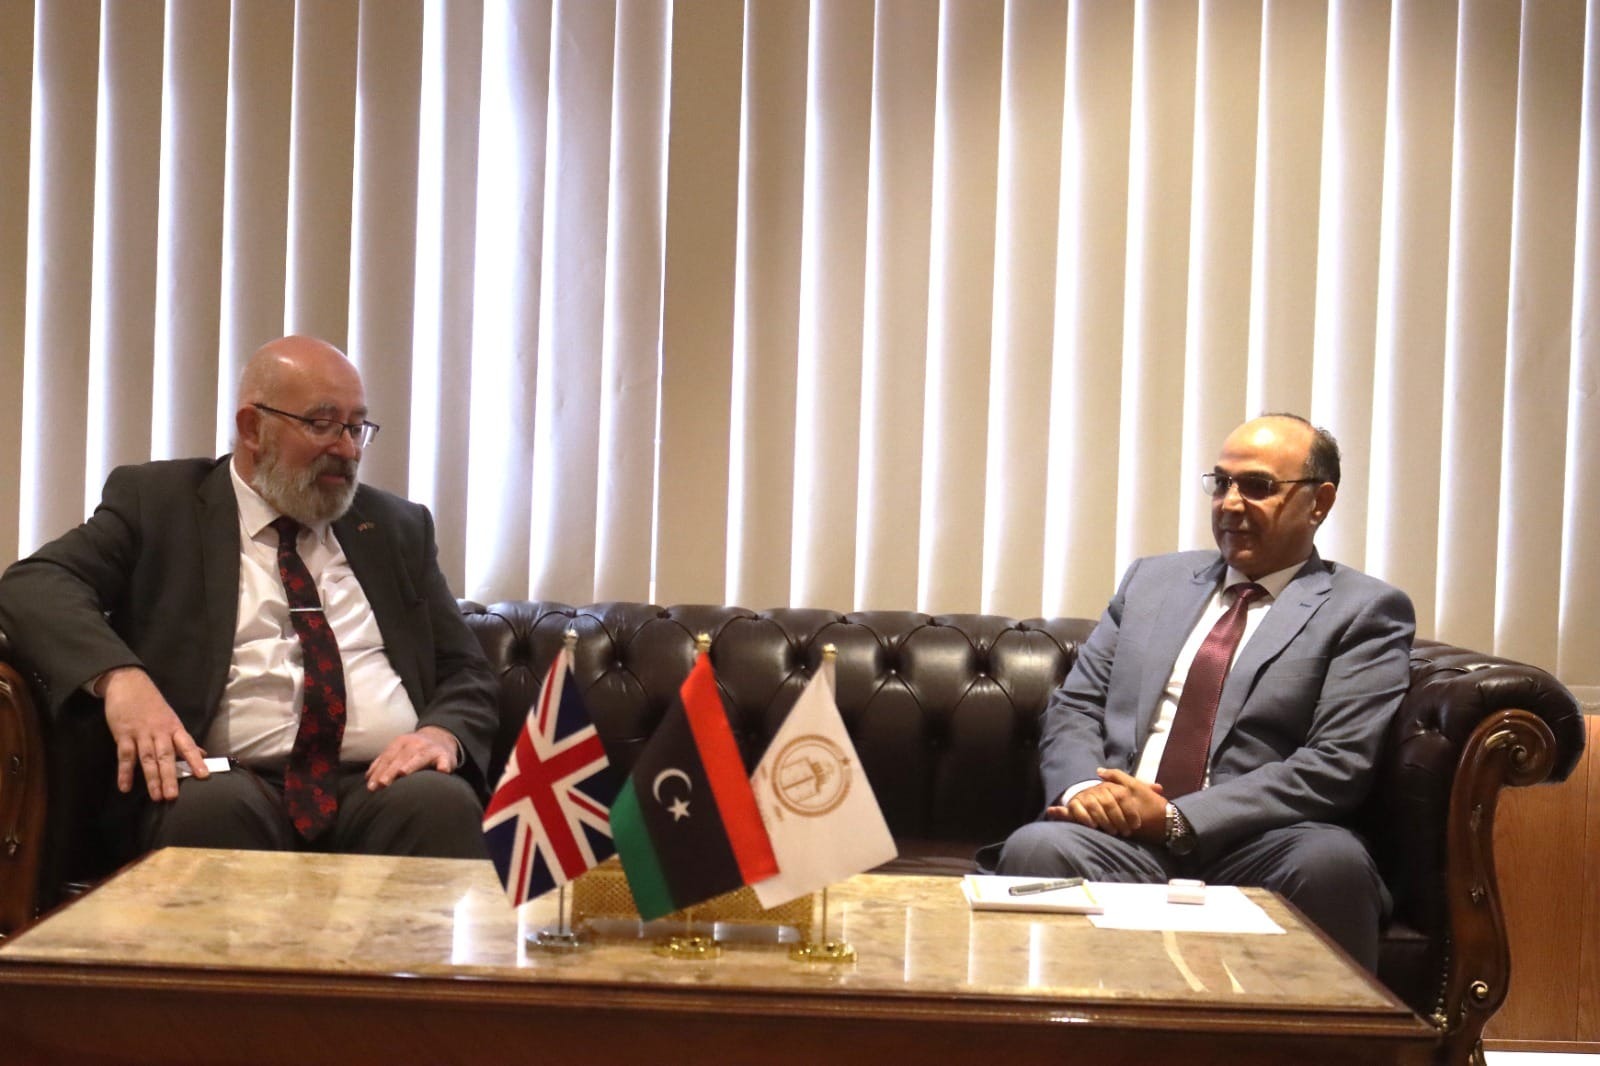 سفير المملكة المتحدة يبحث التعاون في المجالات الاقتصادية مع بلدية بنغازي